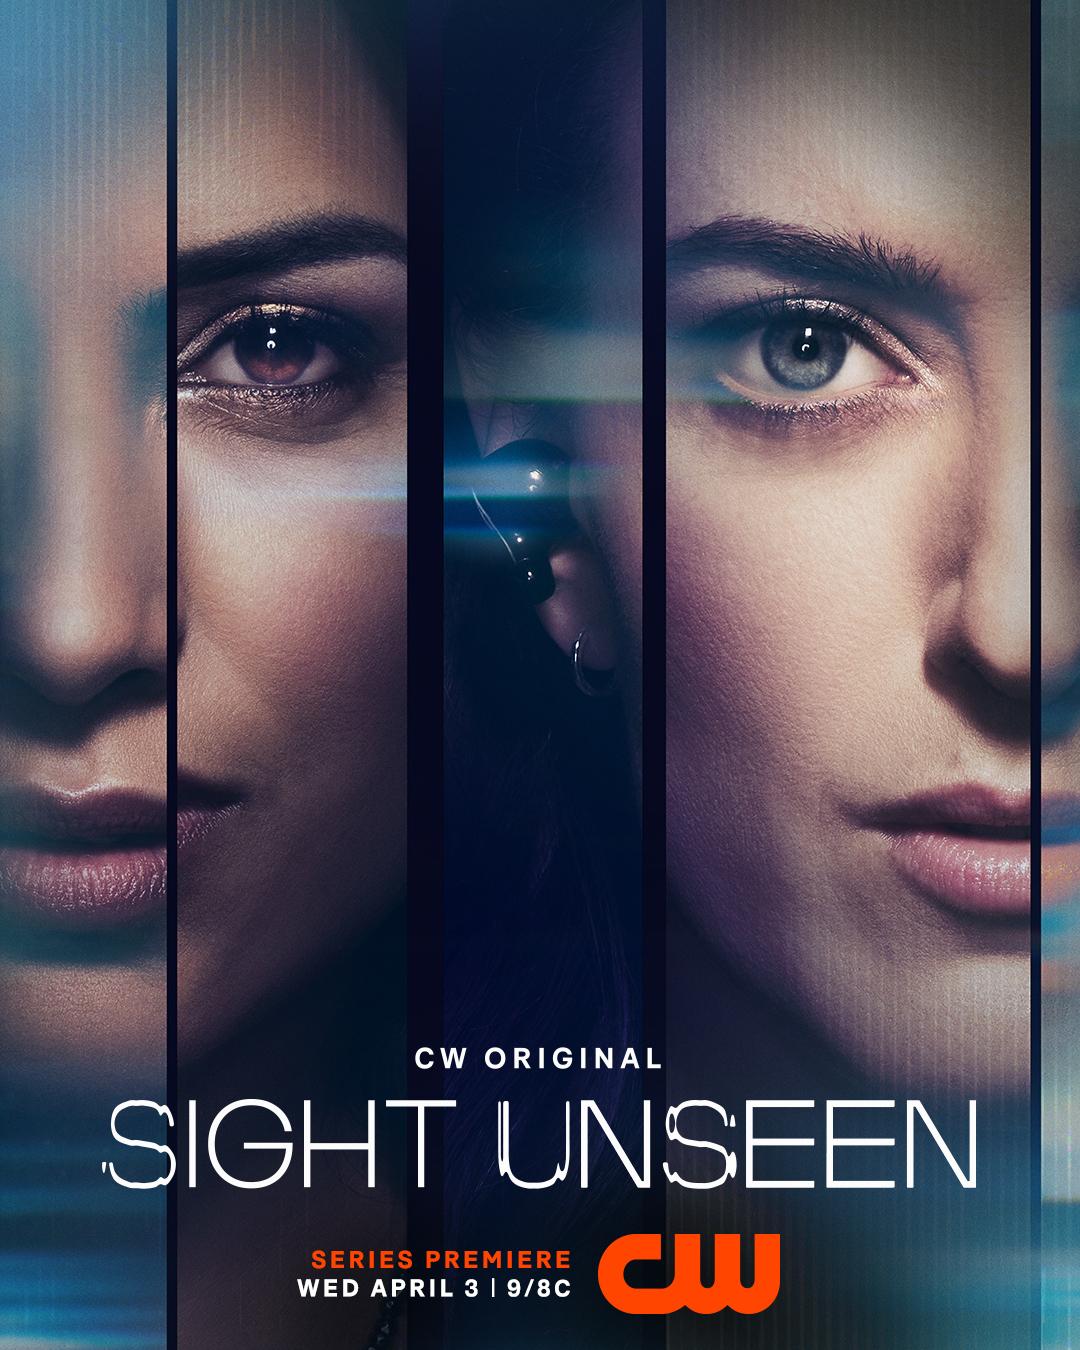 Sight Unseen Season 2 Release Date